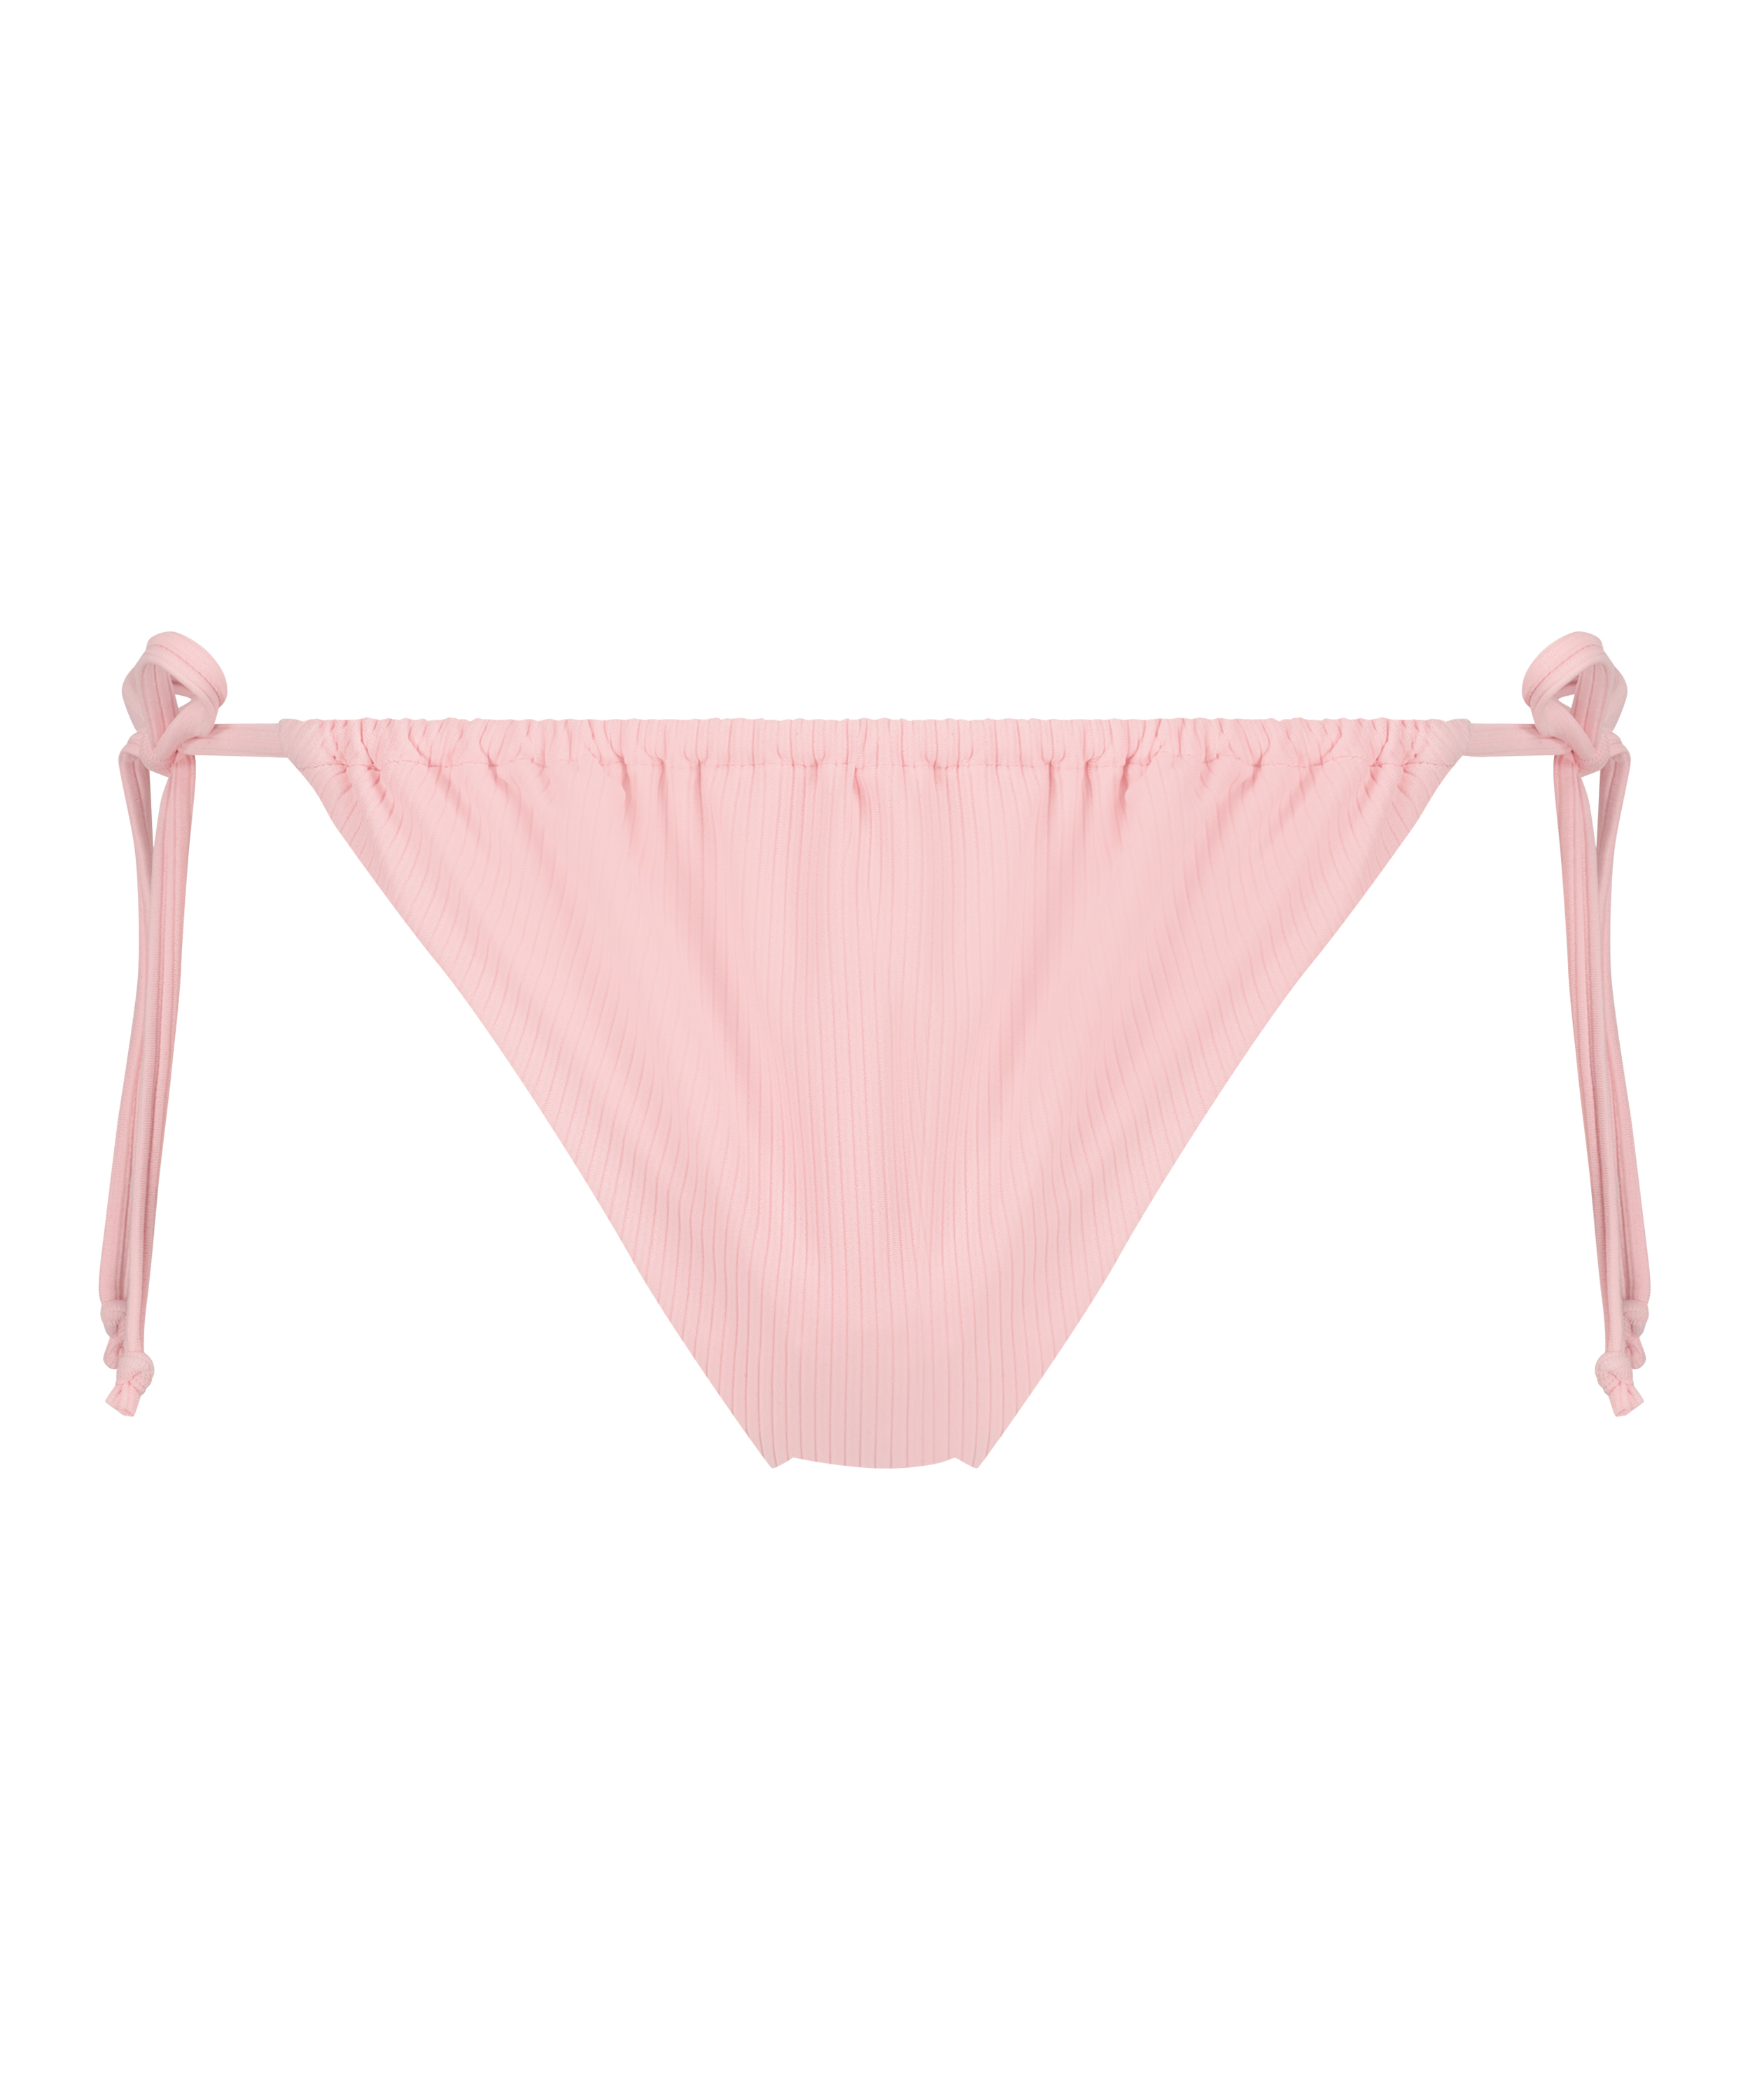 Texture high-cut bikini bottoms, Pink, main